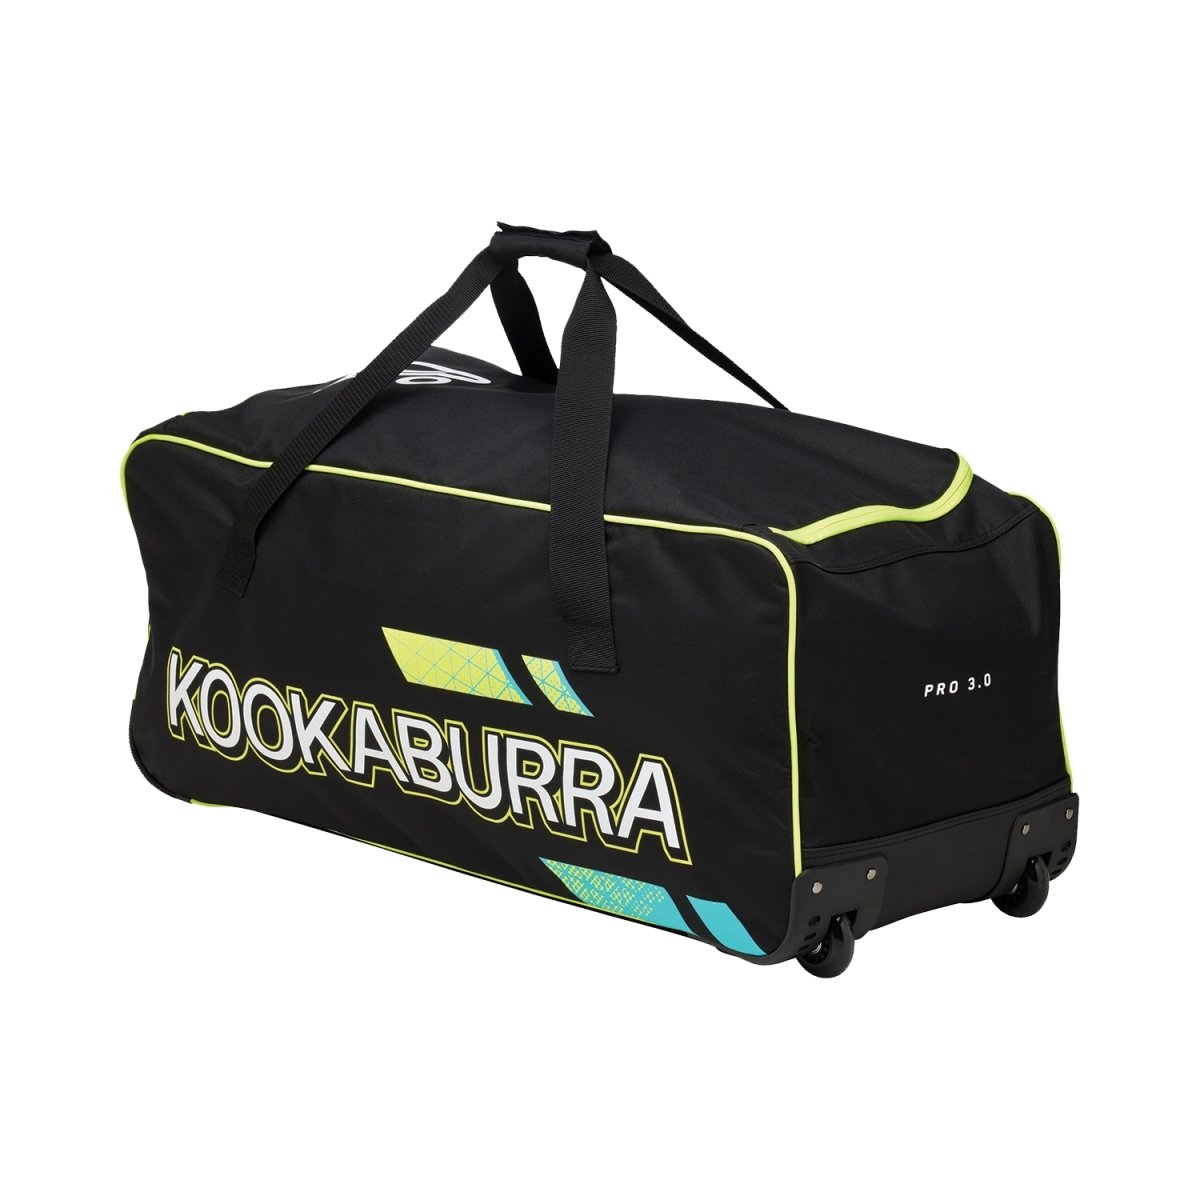 Kookaburra Pro 3.0 Cricket Wheelie Kitbag.